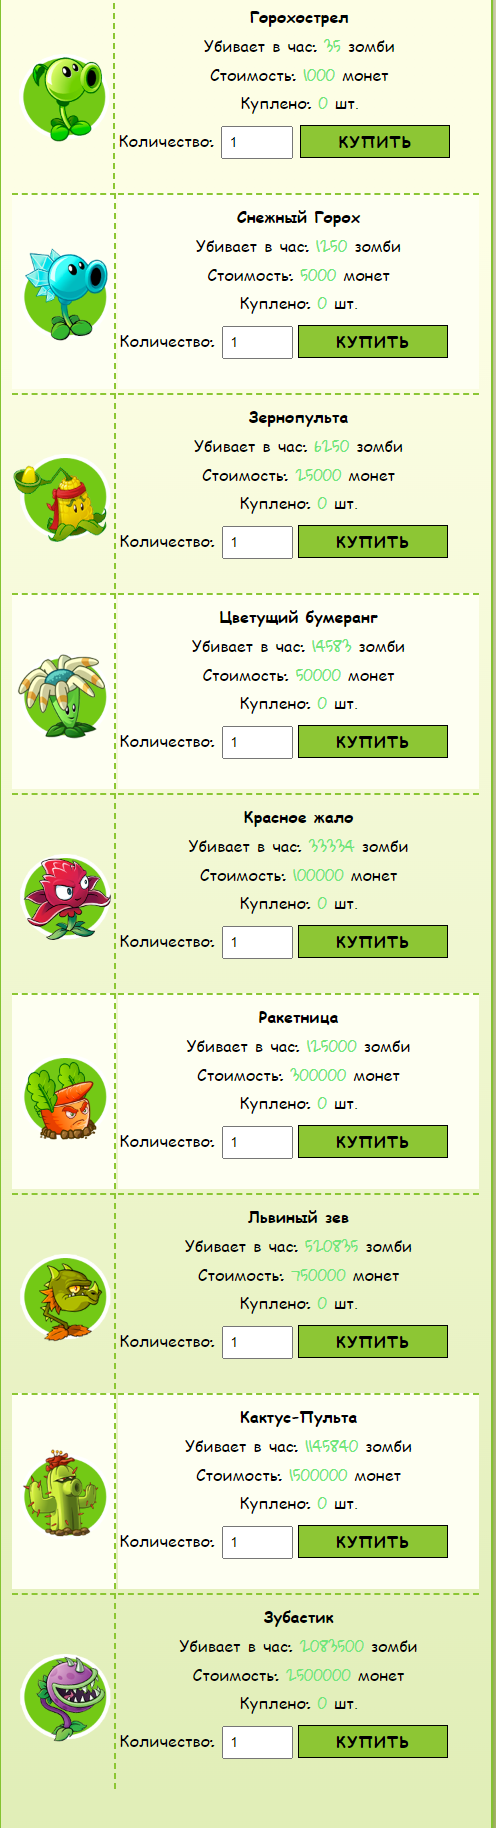 PLANTS vs ZOMBIES - Экономическая игра с выводом средств - s1.pvsz.cc - маркетинг